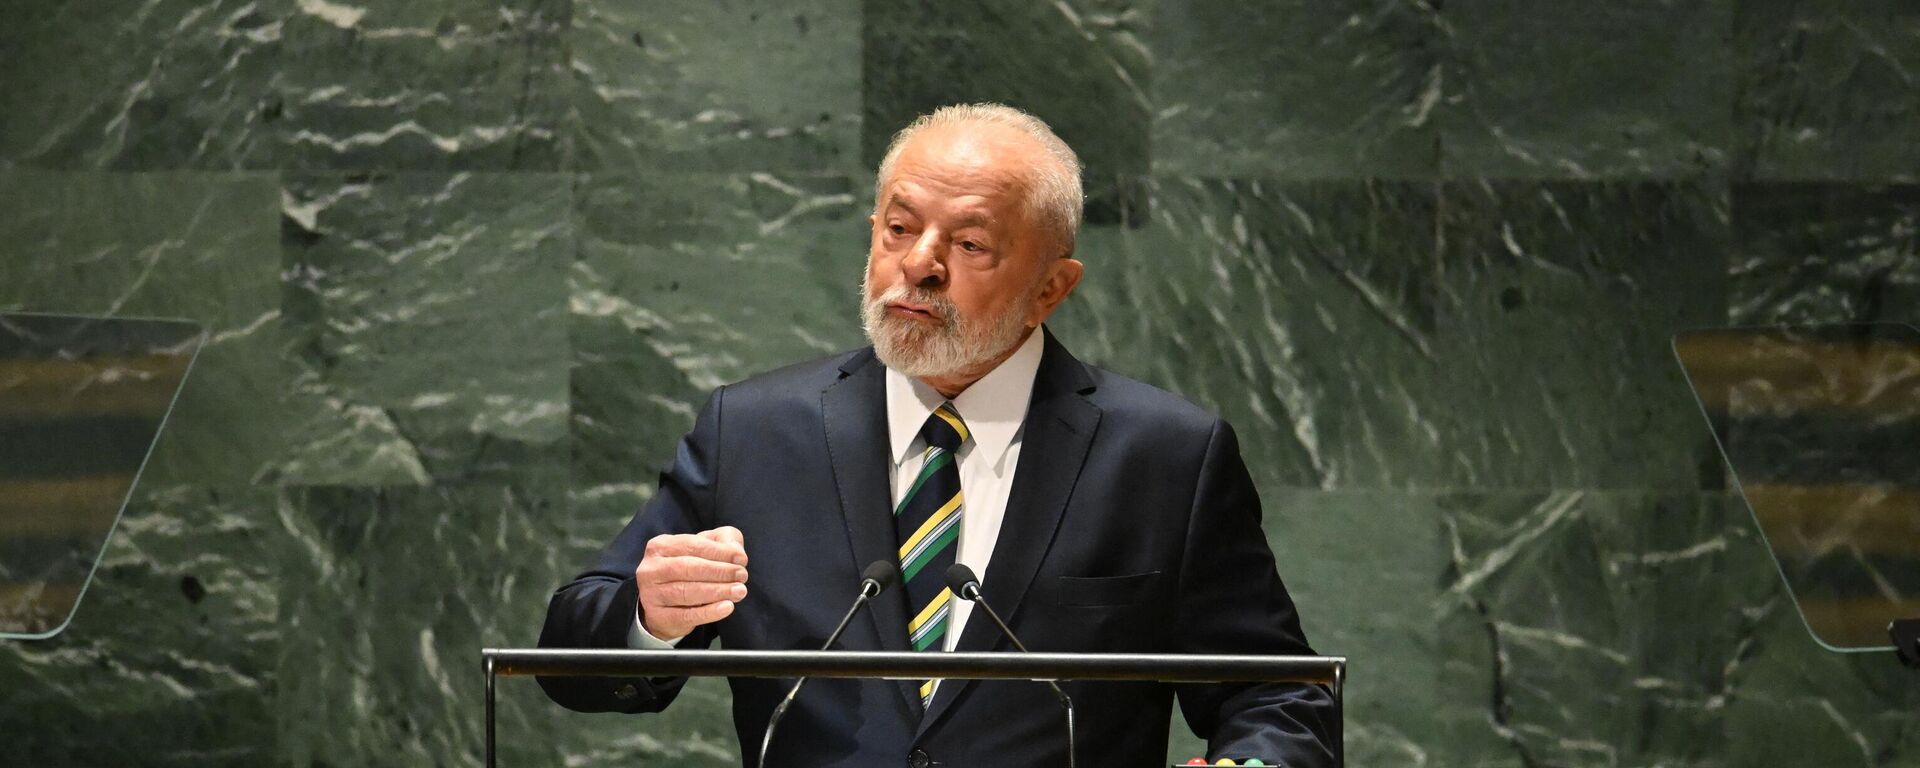 O presidente brasileiro, Luiz Inácio Lula da Silva, discursa na 78ª Assembleia Geral das Nações Unidas, na sede da organização, em Nova York, em 19 de setembro de 2023 - Sputnik Brasil, 1920, 11.10.2023